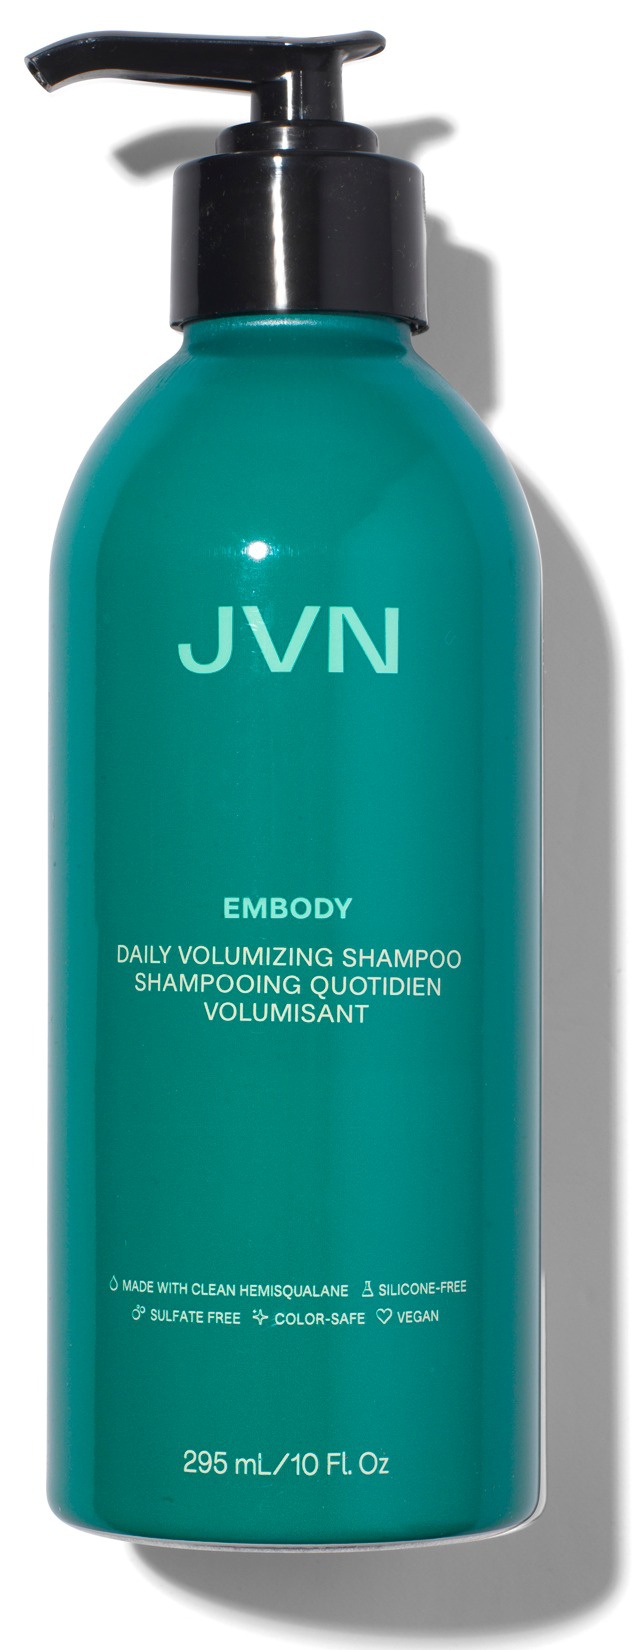 JVN Embody Daily Volumizing Shampoo